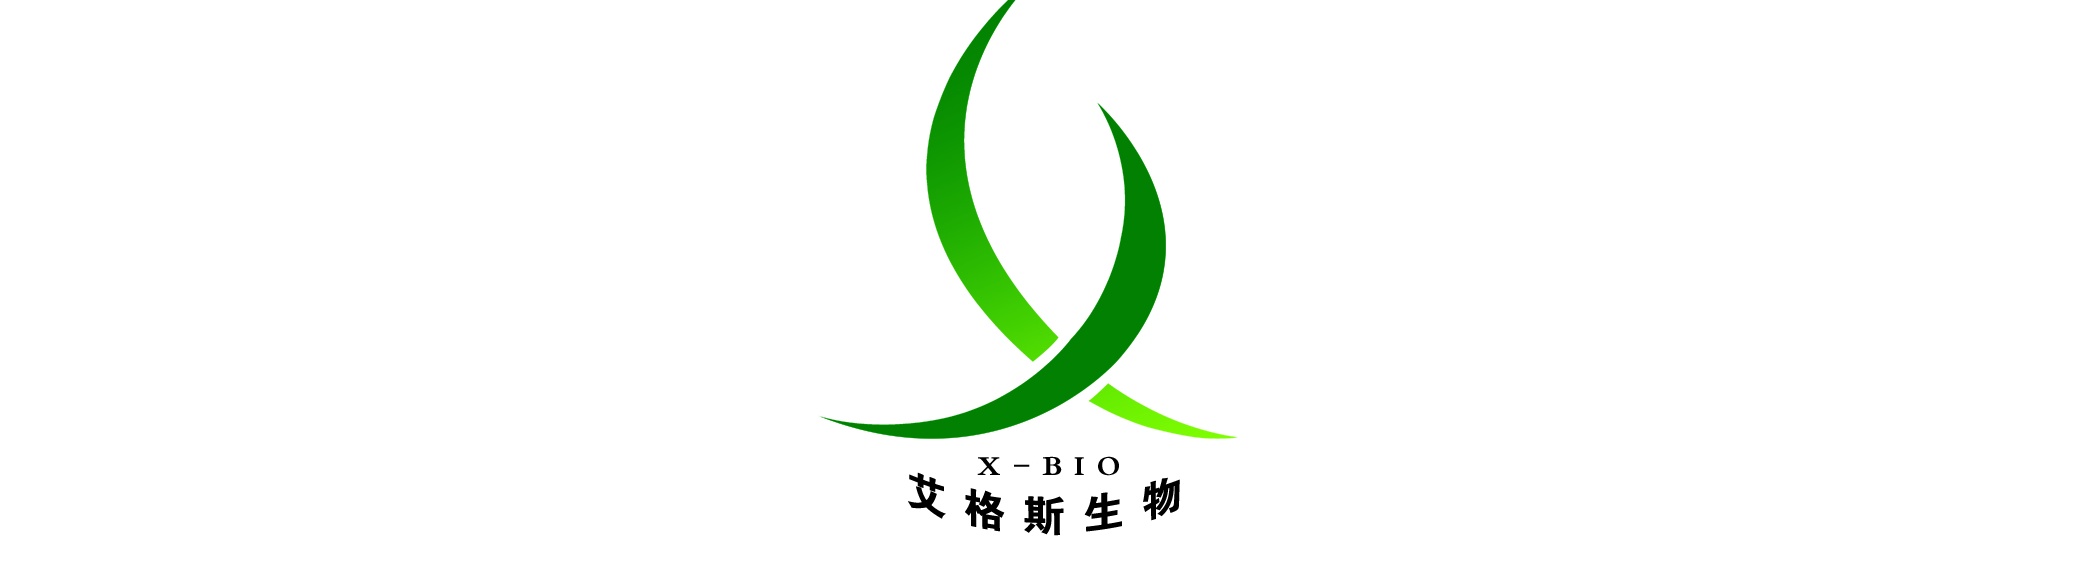 北京艾格斯生物科技有限公司